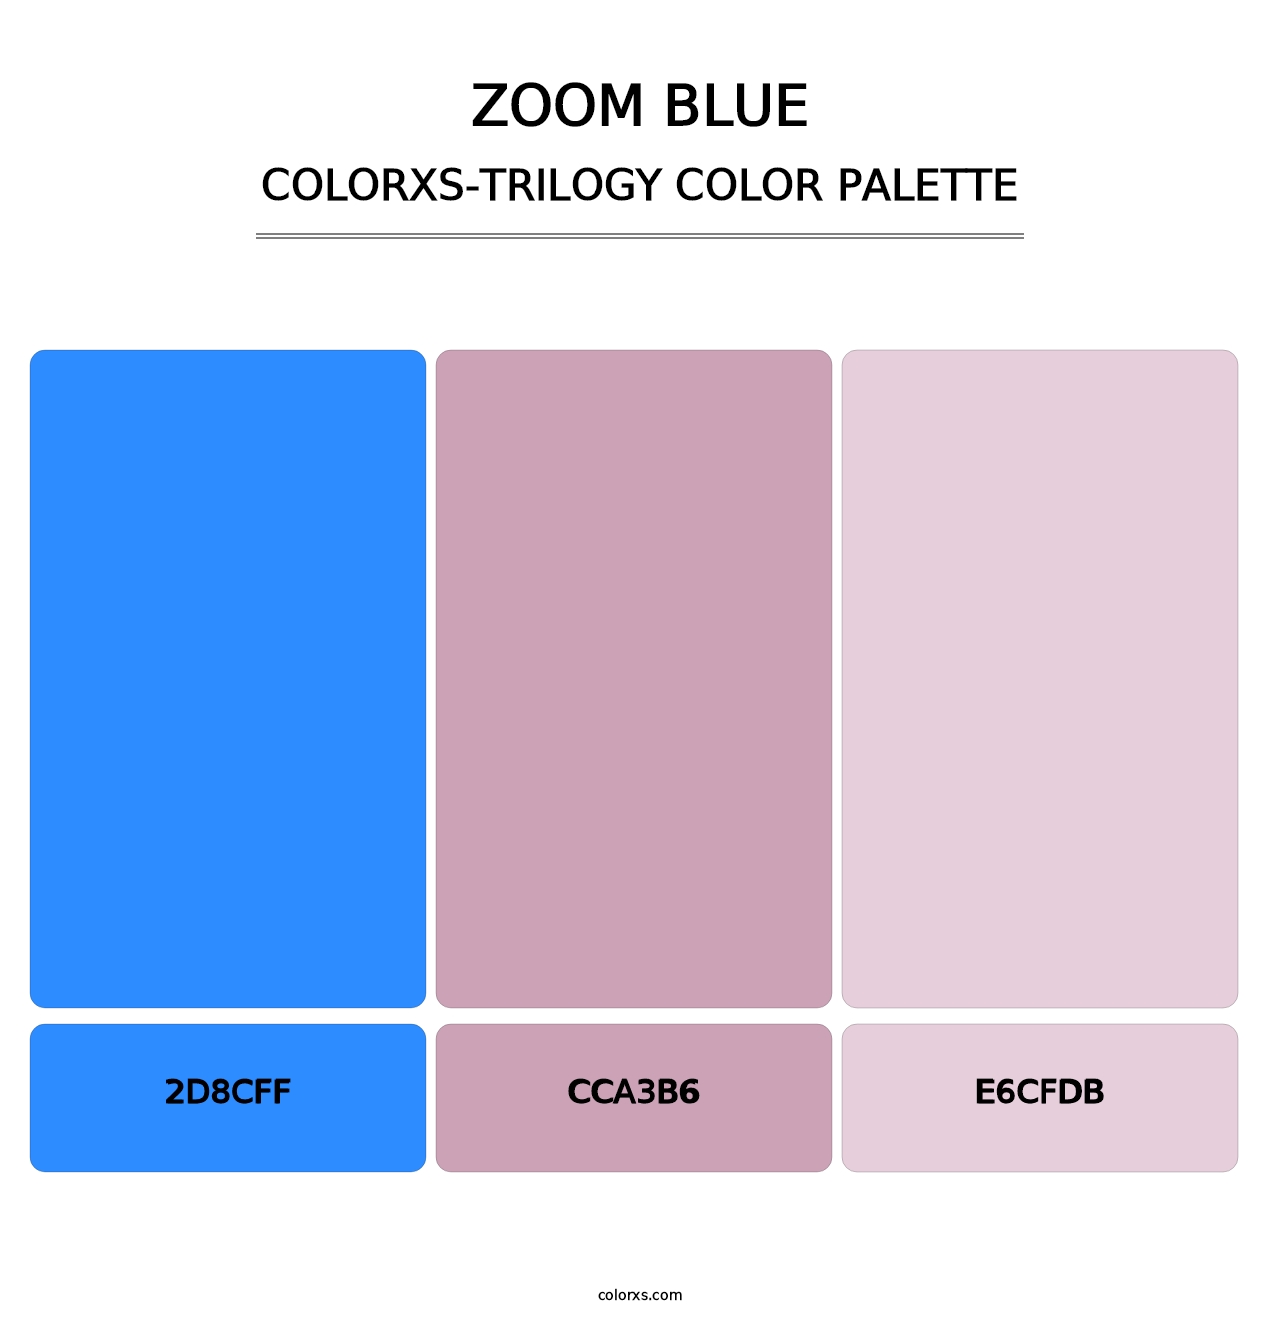 Zoom Blue - Colorxs Trilogy Palette